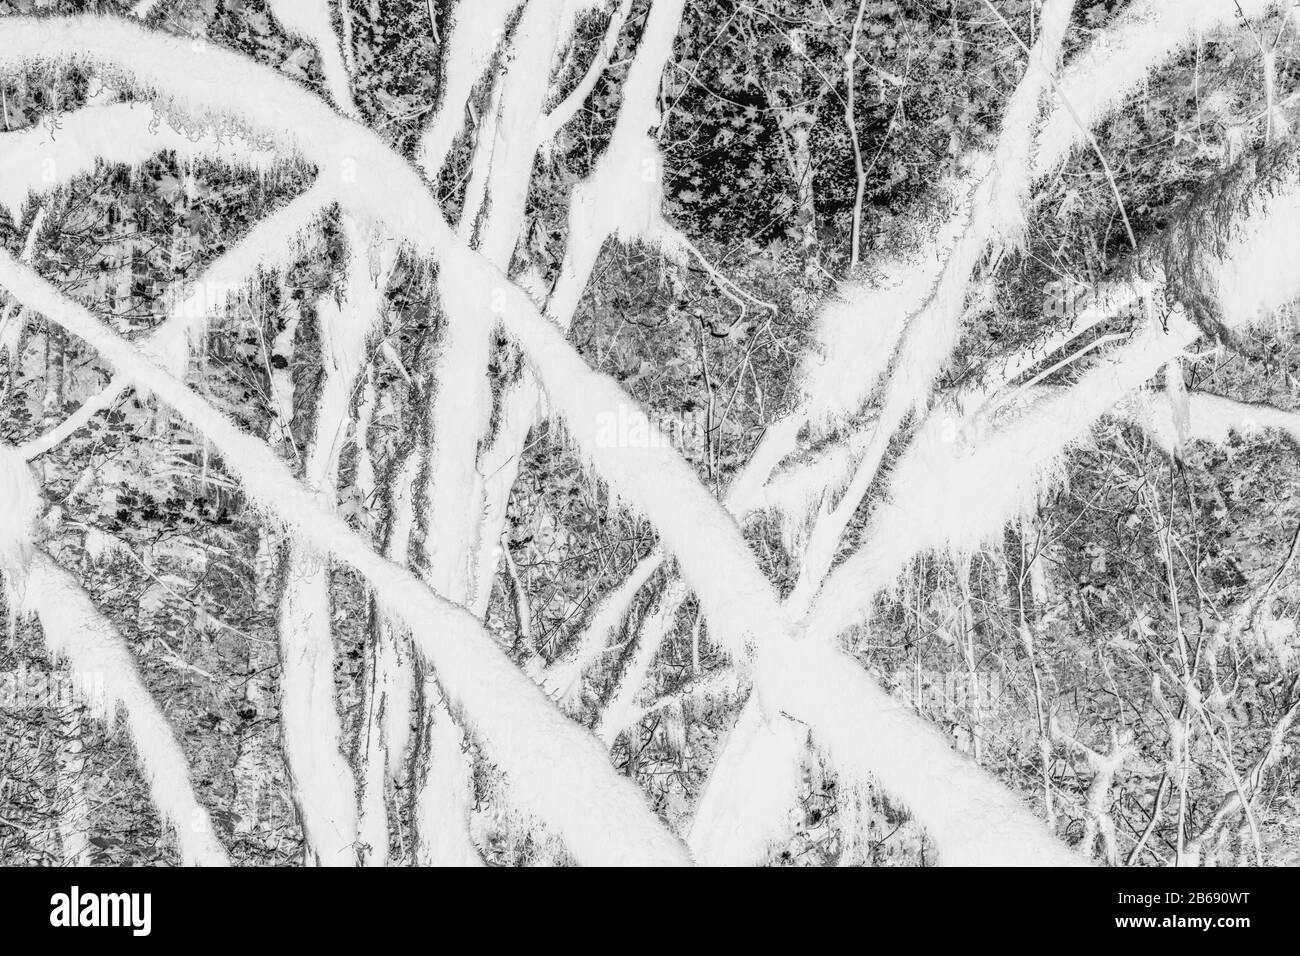 Image abstraite noire et blanche (inversée) de la forêt tropicale tempérée luxuriante, des fougères et des arbres couverts de mousse Banque D'Images